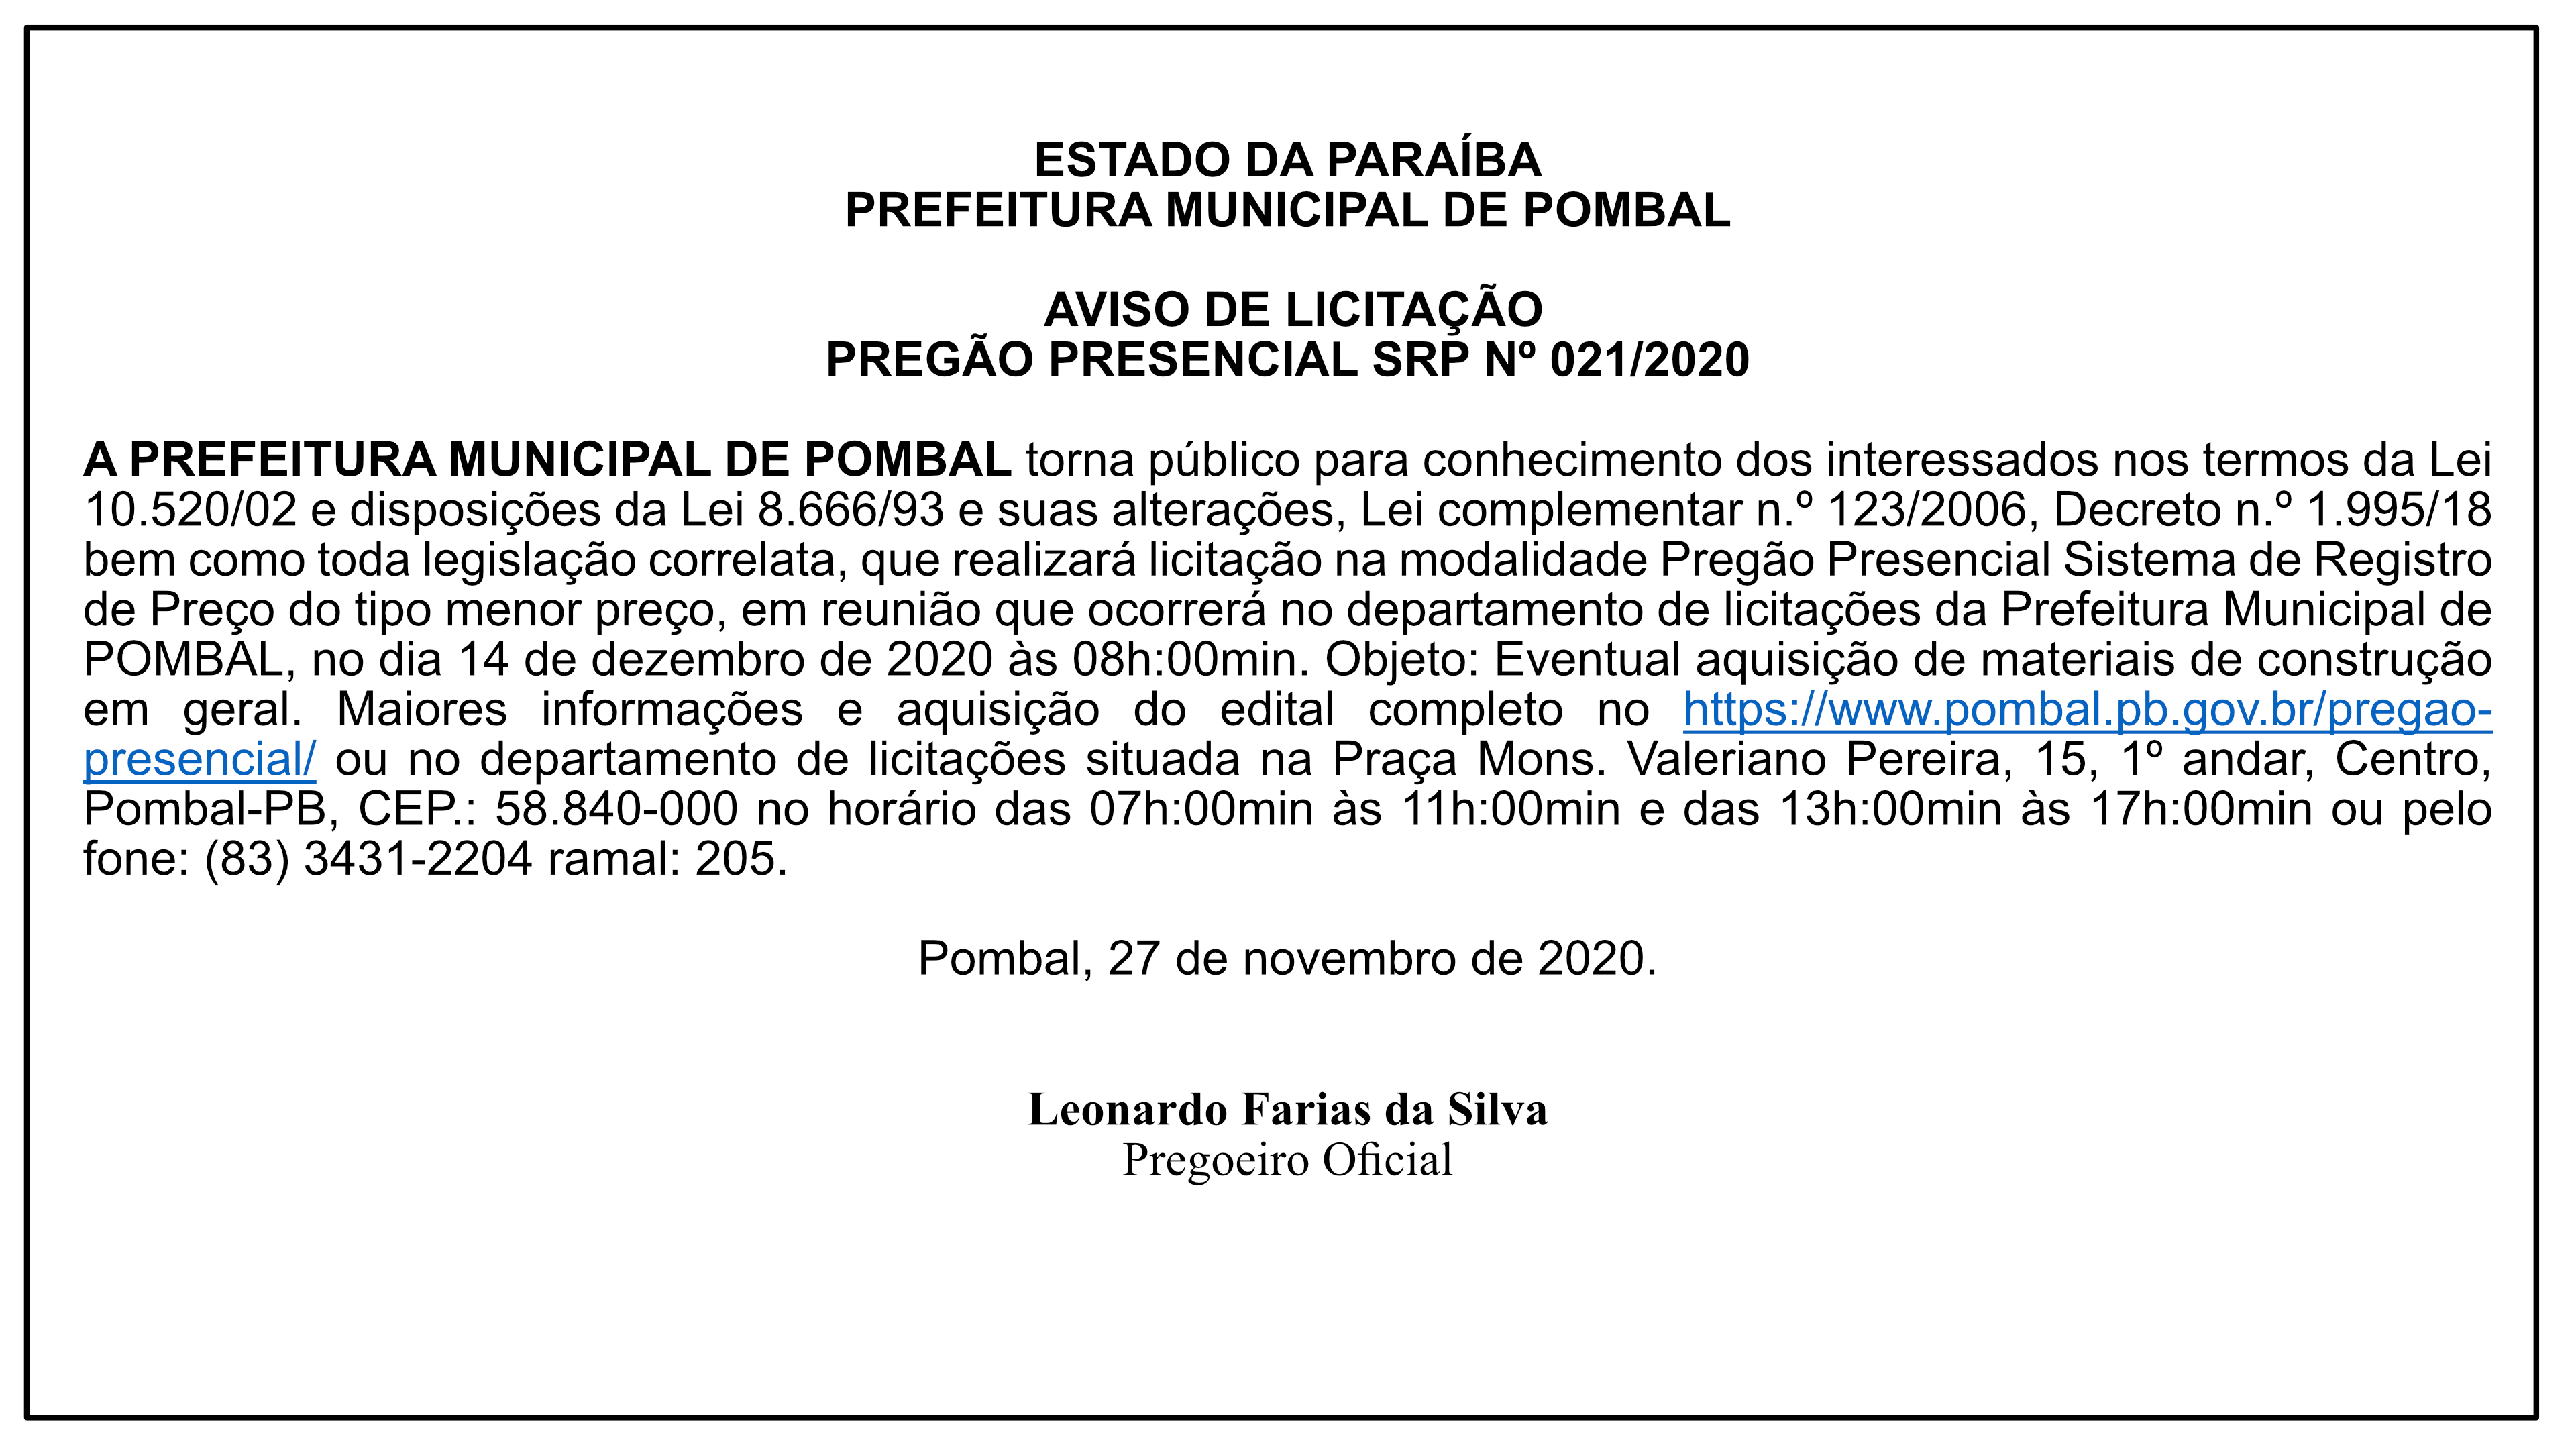 PREFEITURA MUNICIPAL DE POMBAL – AVISO DE LICITAÇÃO – PREGÃO PRESENCIAL SRP Nº 021/2020